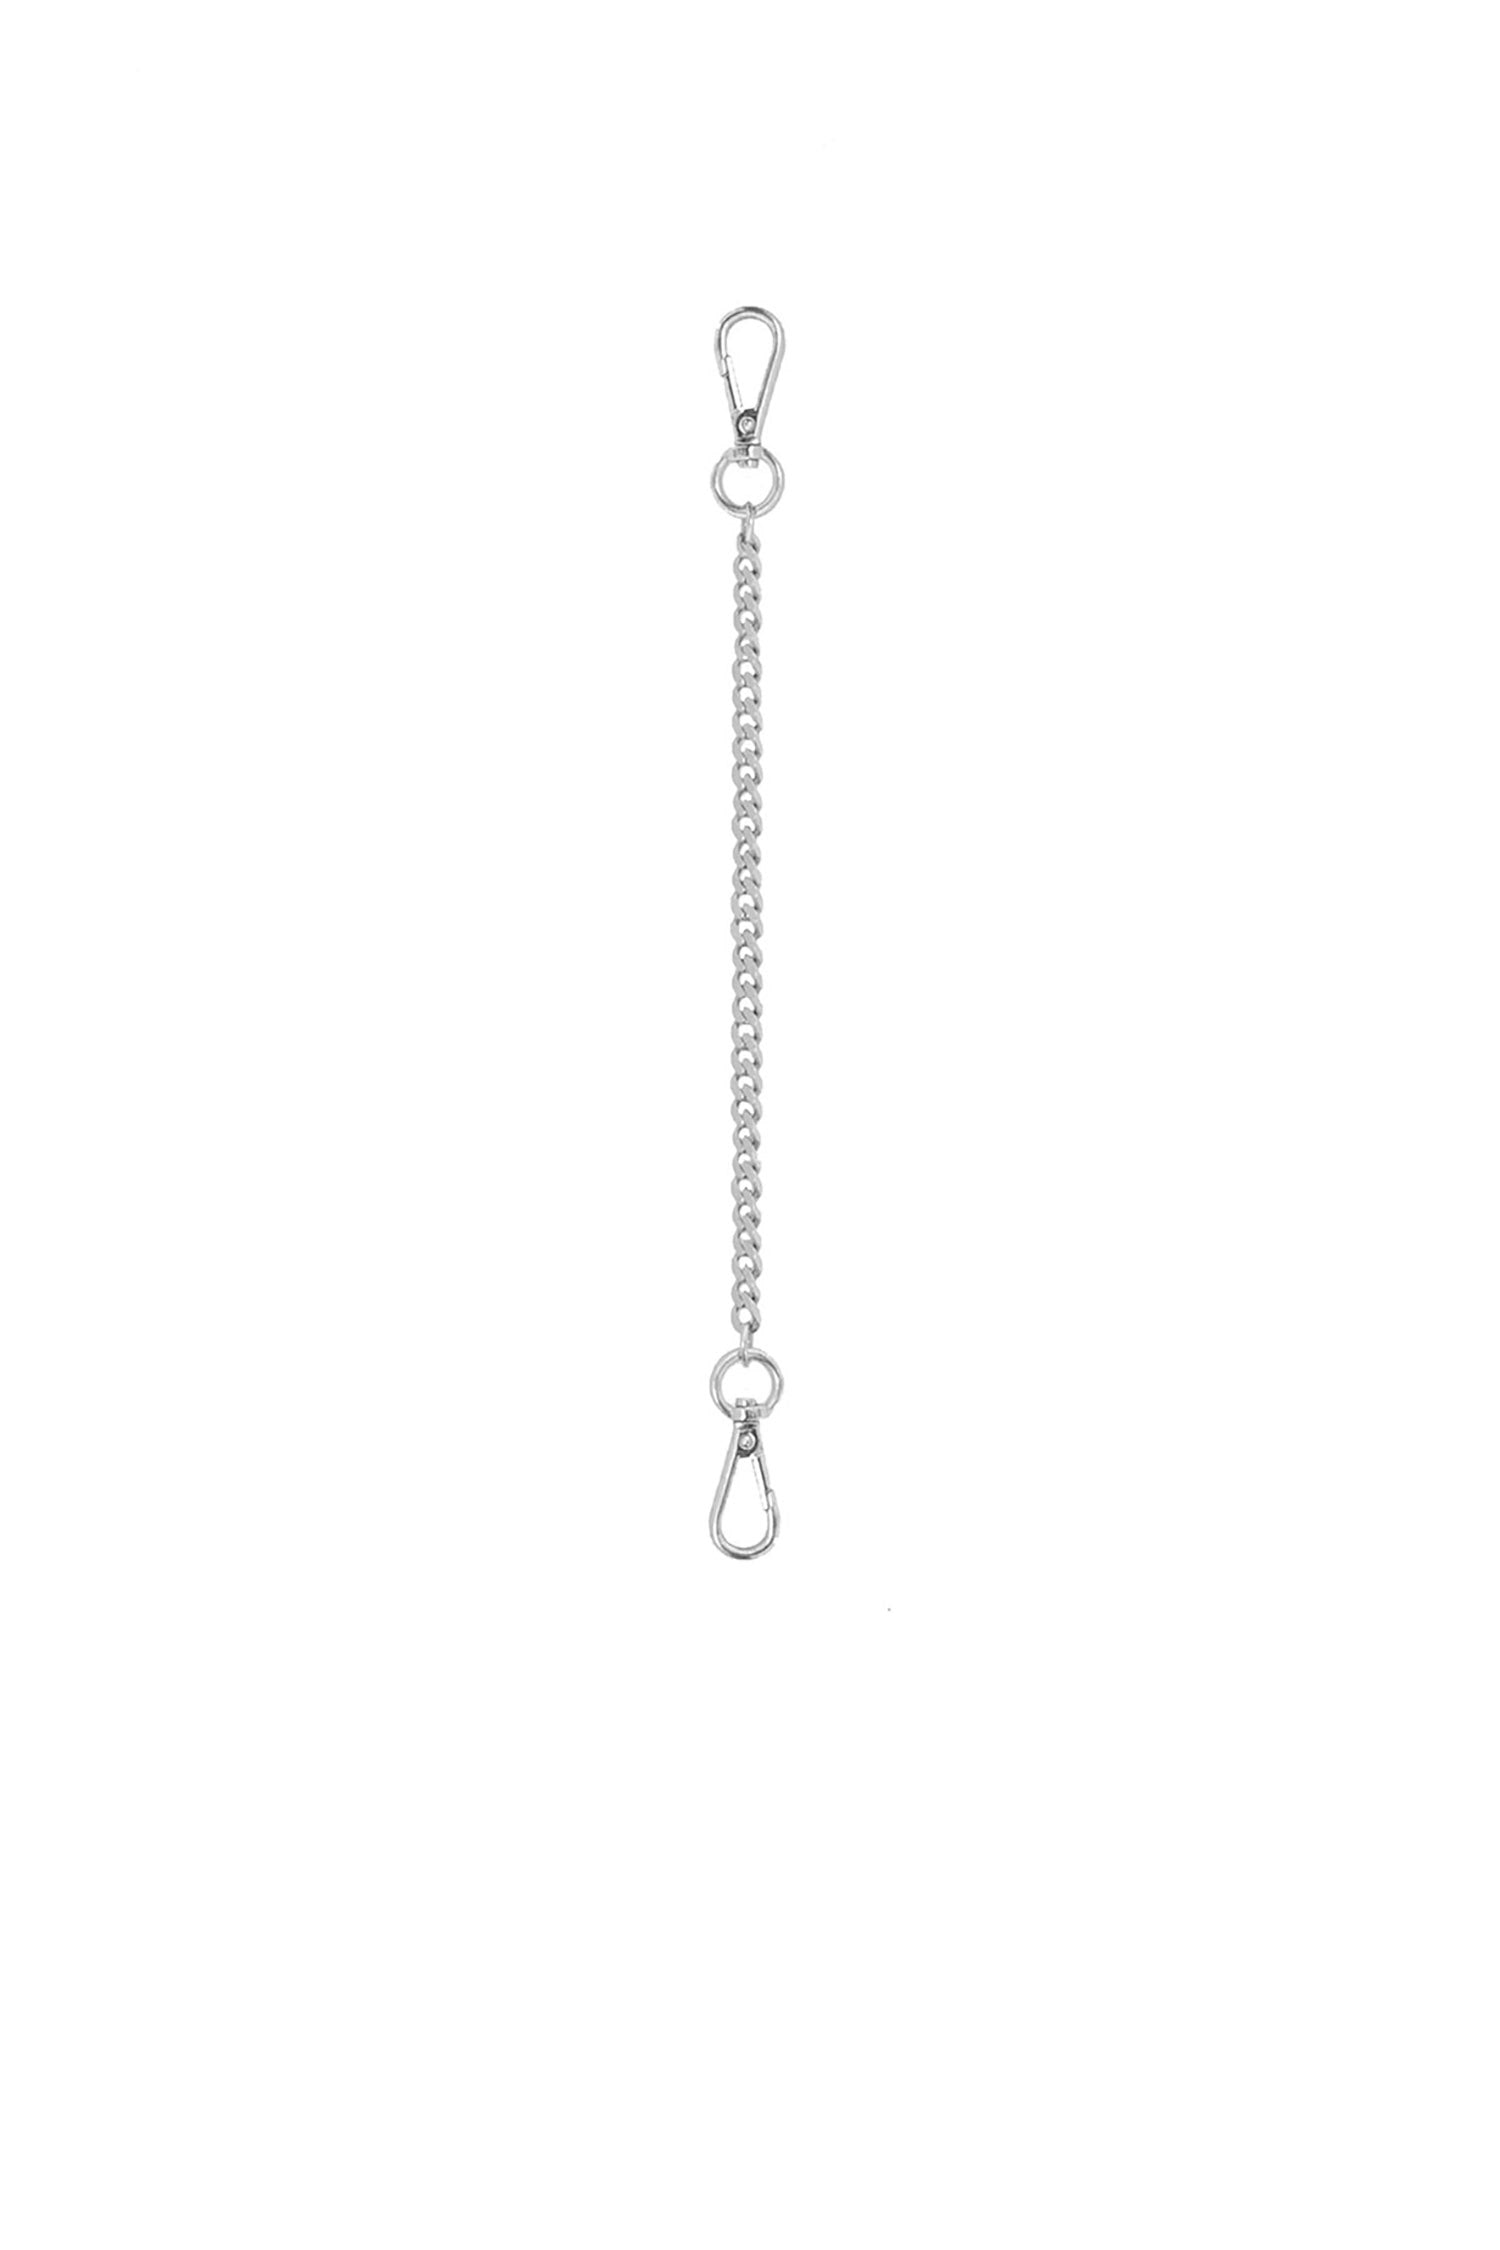 SAMPLE - The Binx Chain Strap Silver